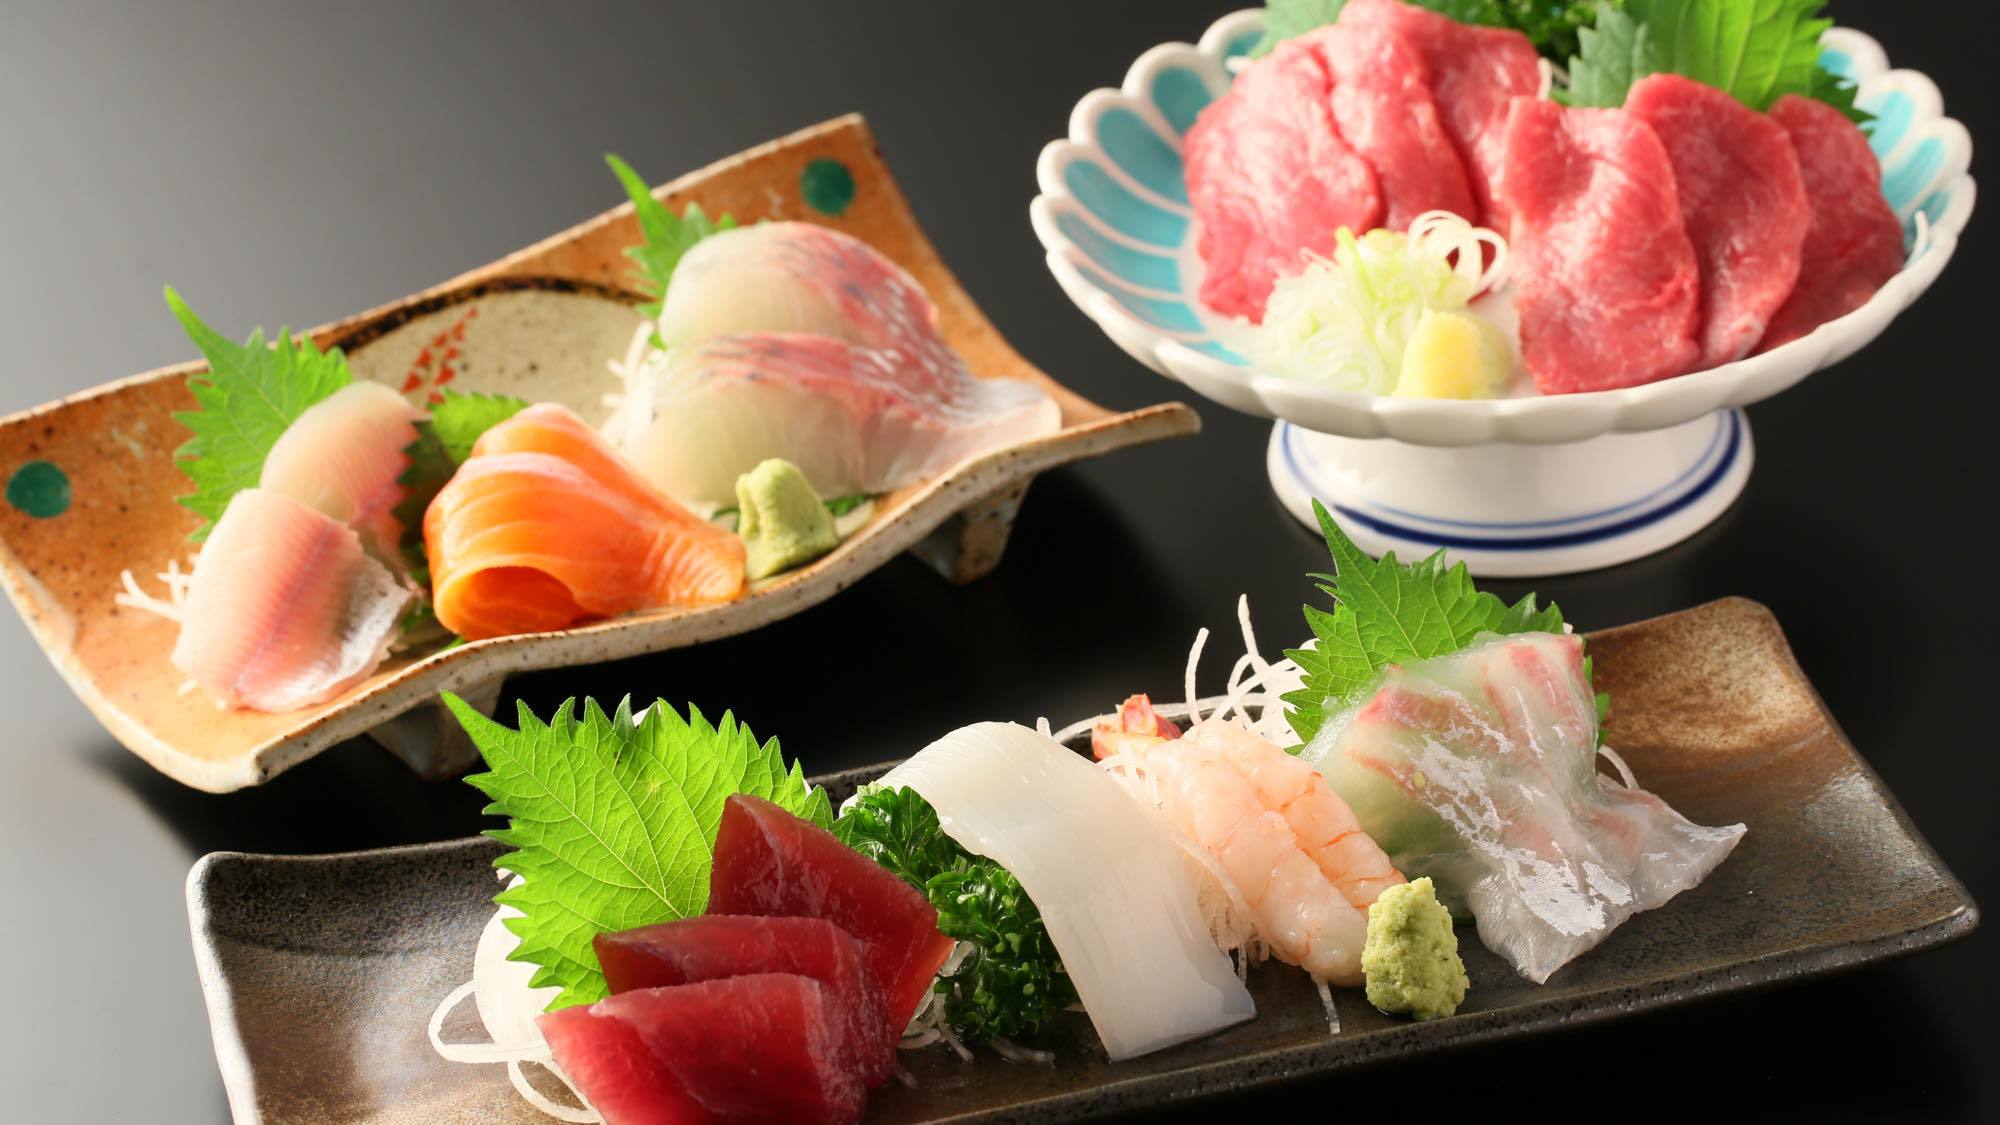 【夕食】「選べるお造り」3種から選択可能。馬刺し・川魚のお刺身・海のお刺身